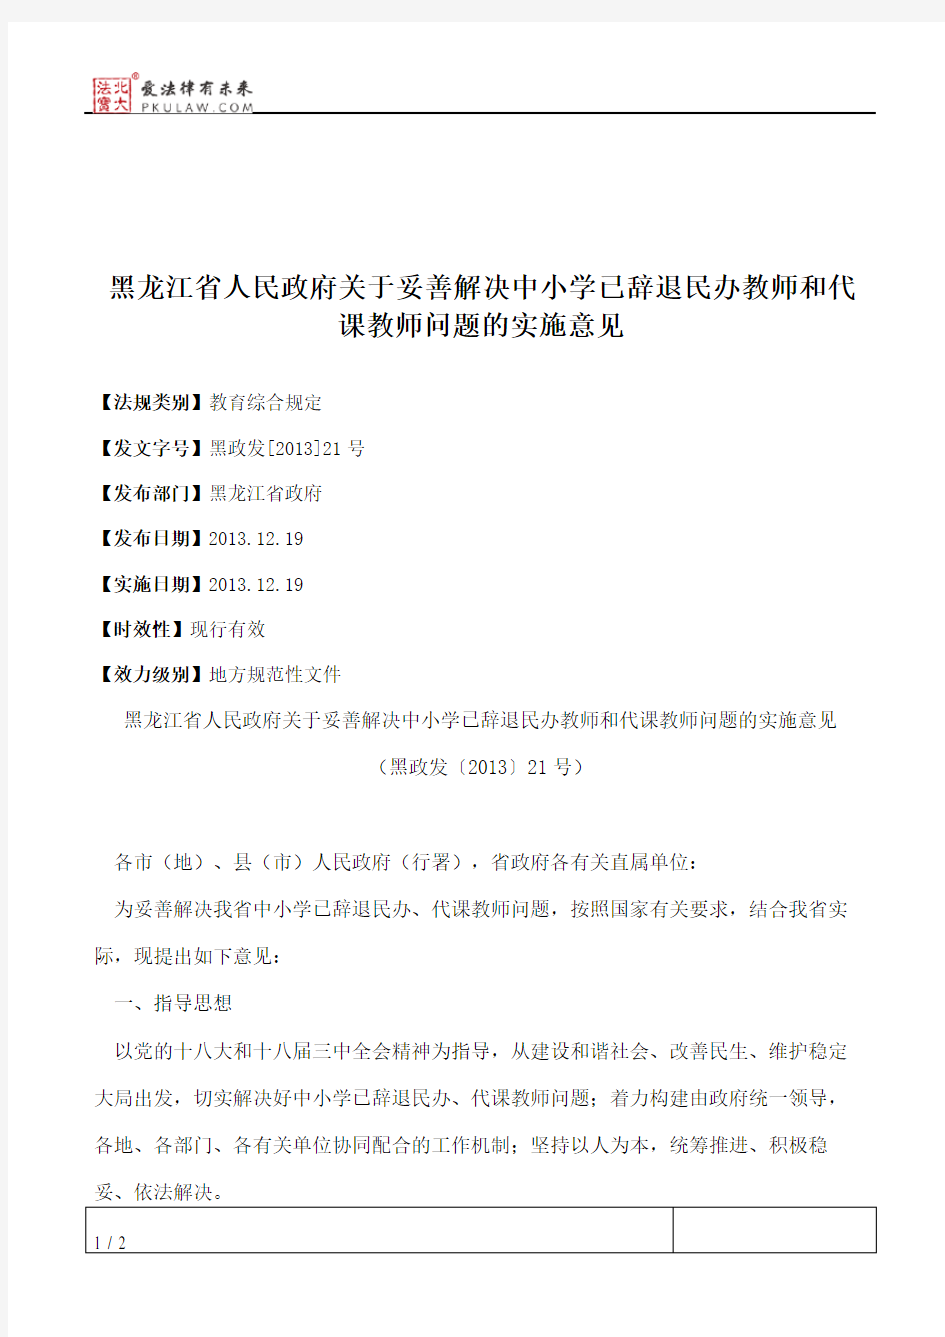 黑龙江省人民政府关于妥善解决中小学已辞退民办教师和代课教师问